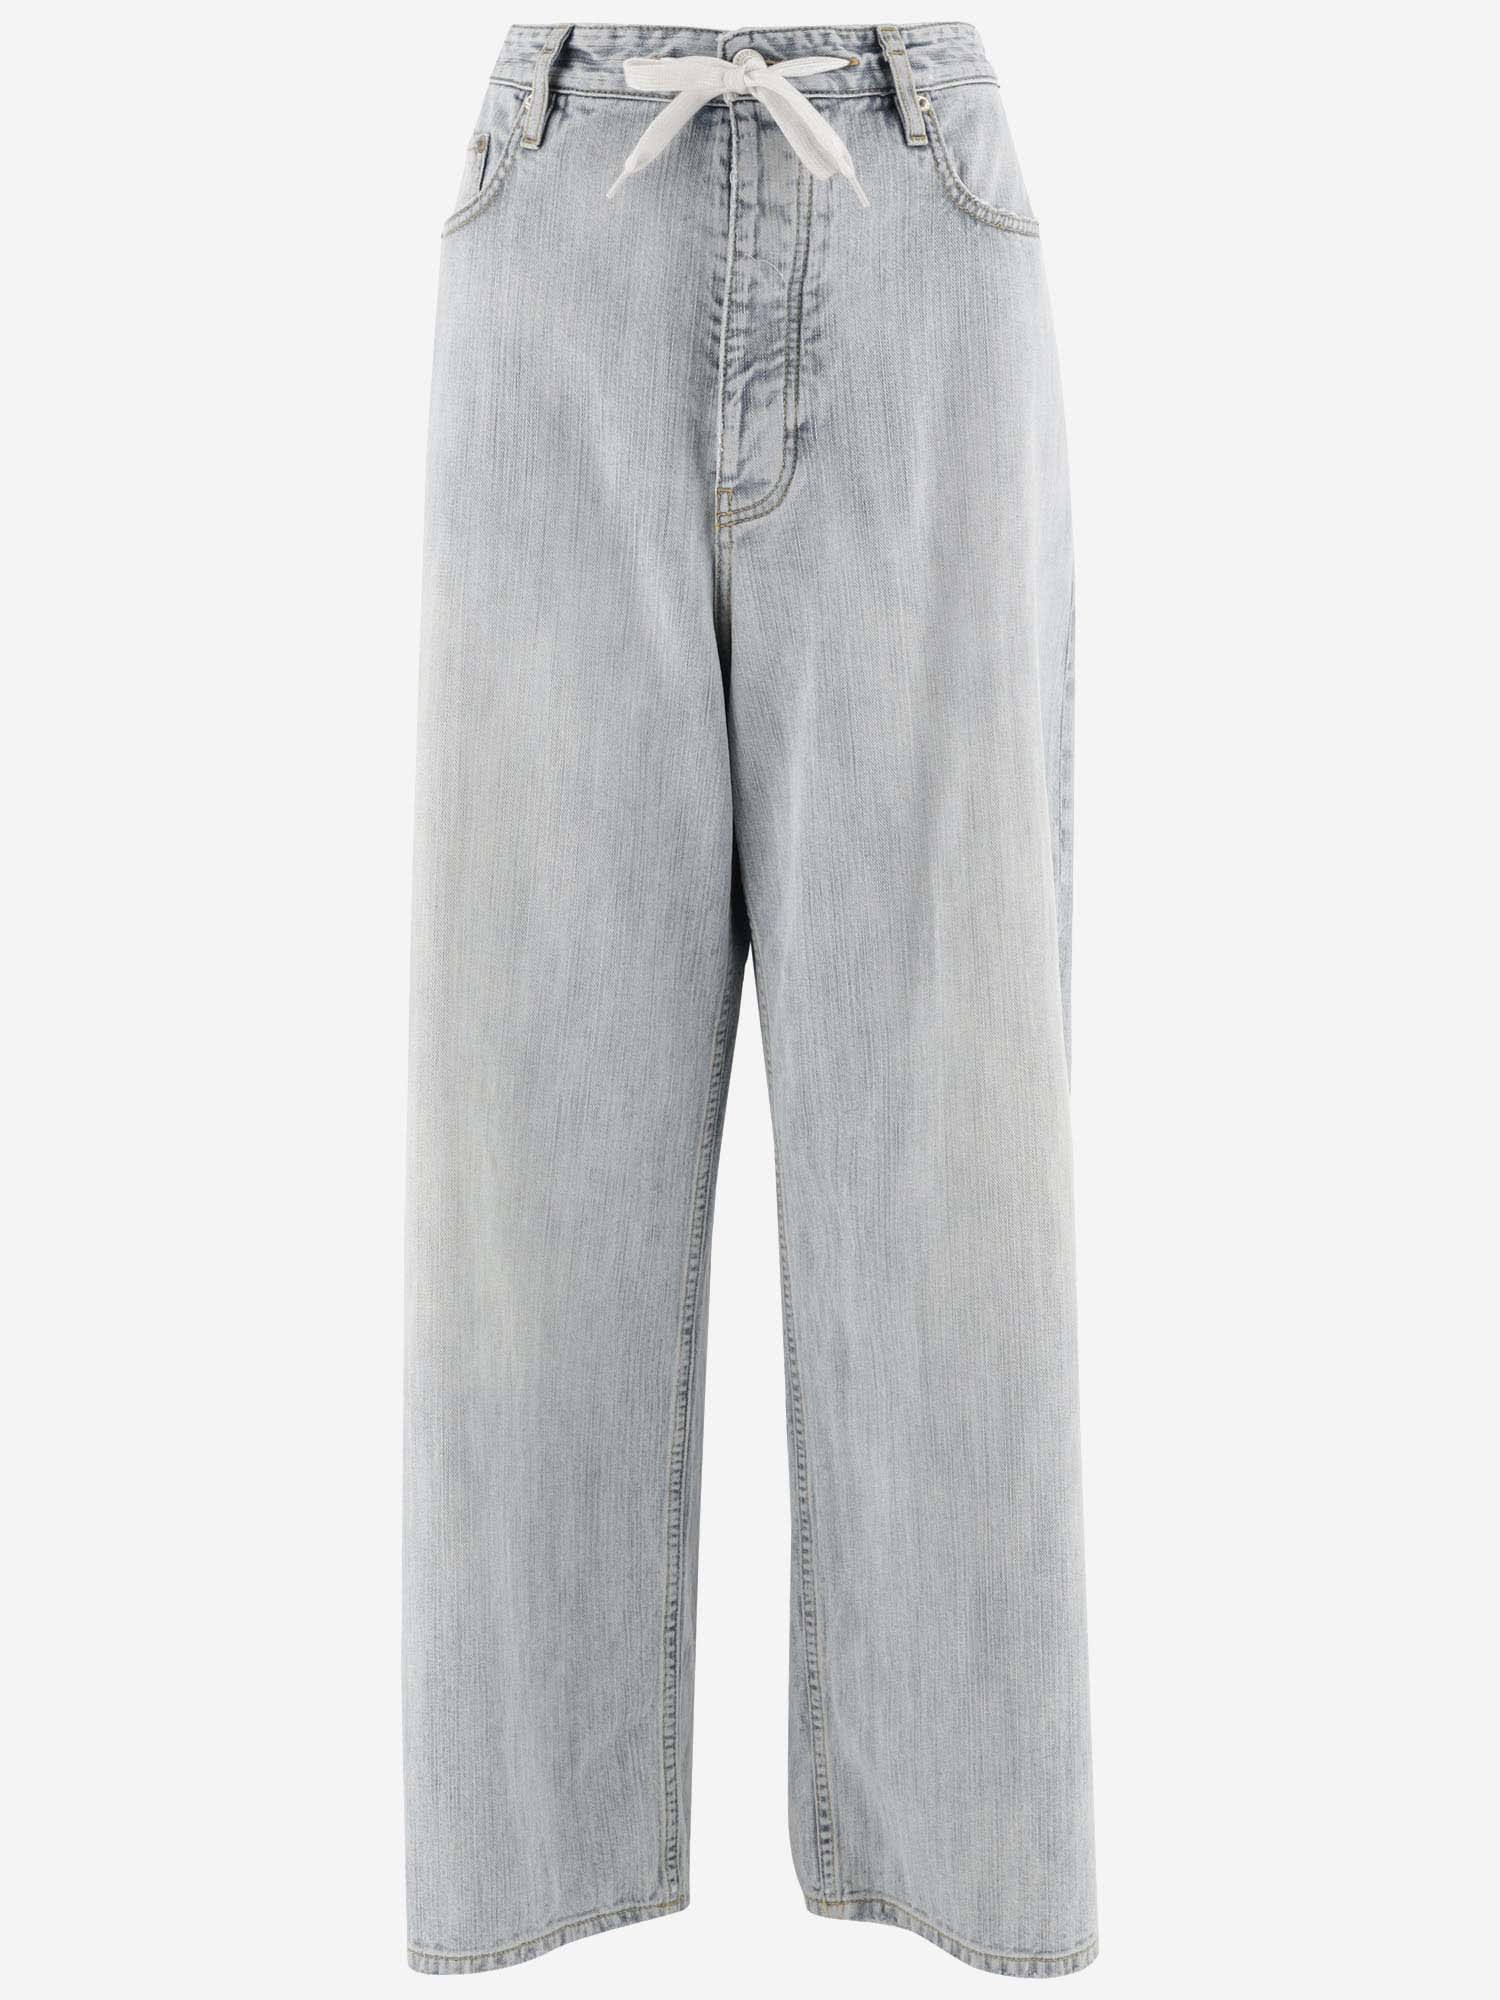 Cotton Denim Jeans